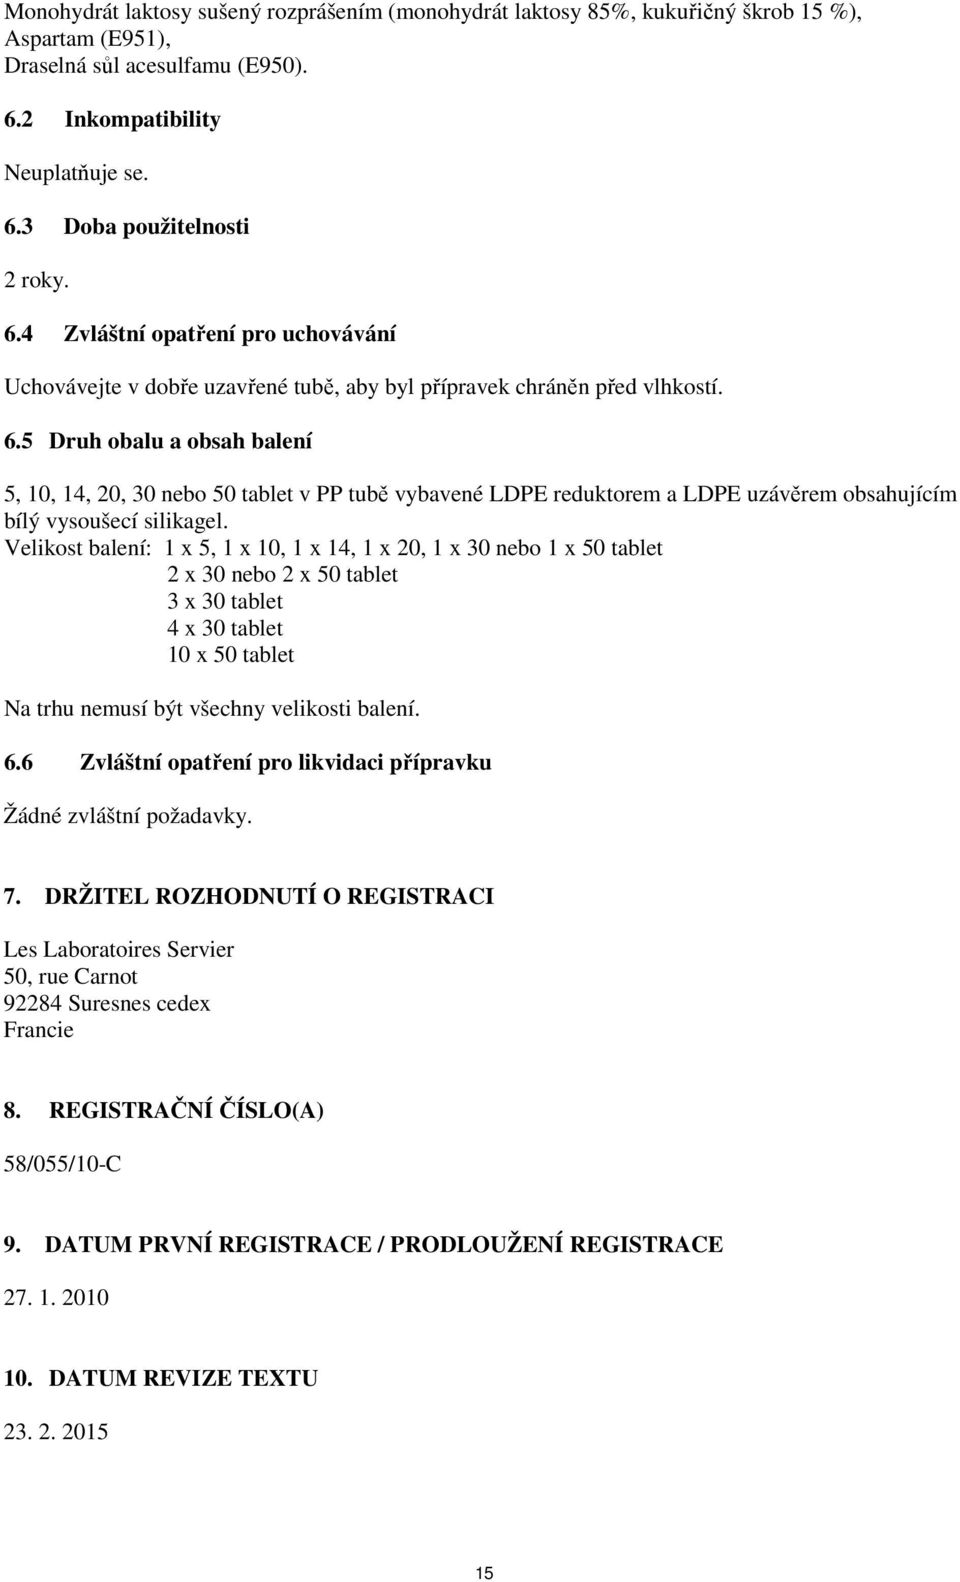 5 Druh obalu a obsah balení 5, 10, 14, 20, 30 nebo 50 tablet v PP tubě vybavené LDPE reduktorem a LDPE uzávěrem obsahujícím bílý vysoušecí silikagel.